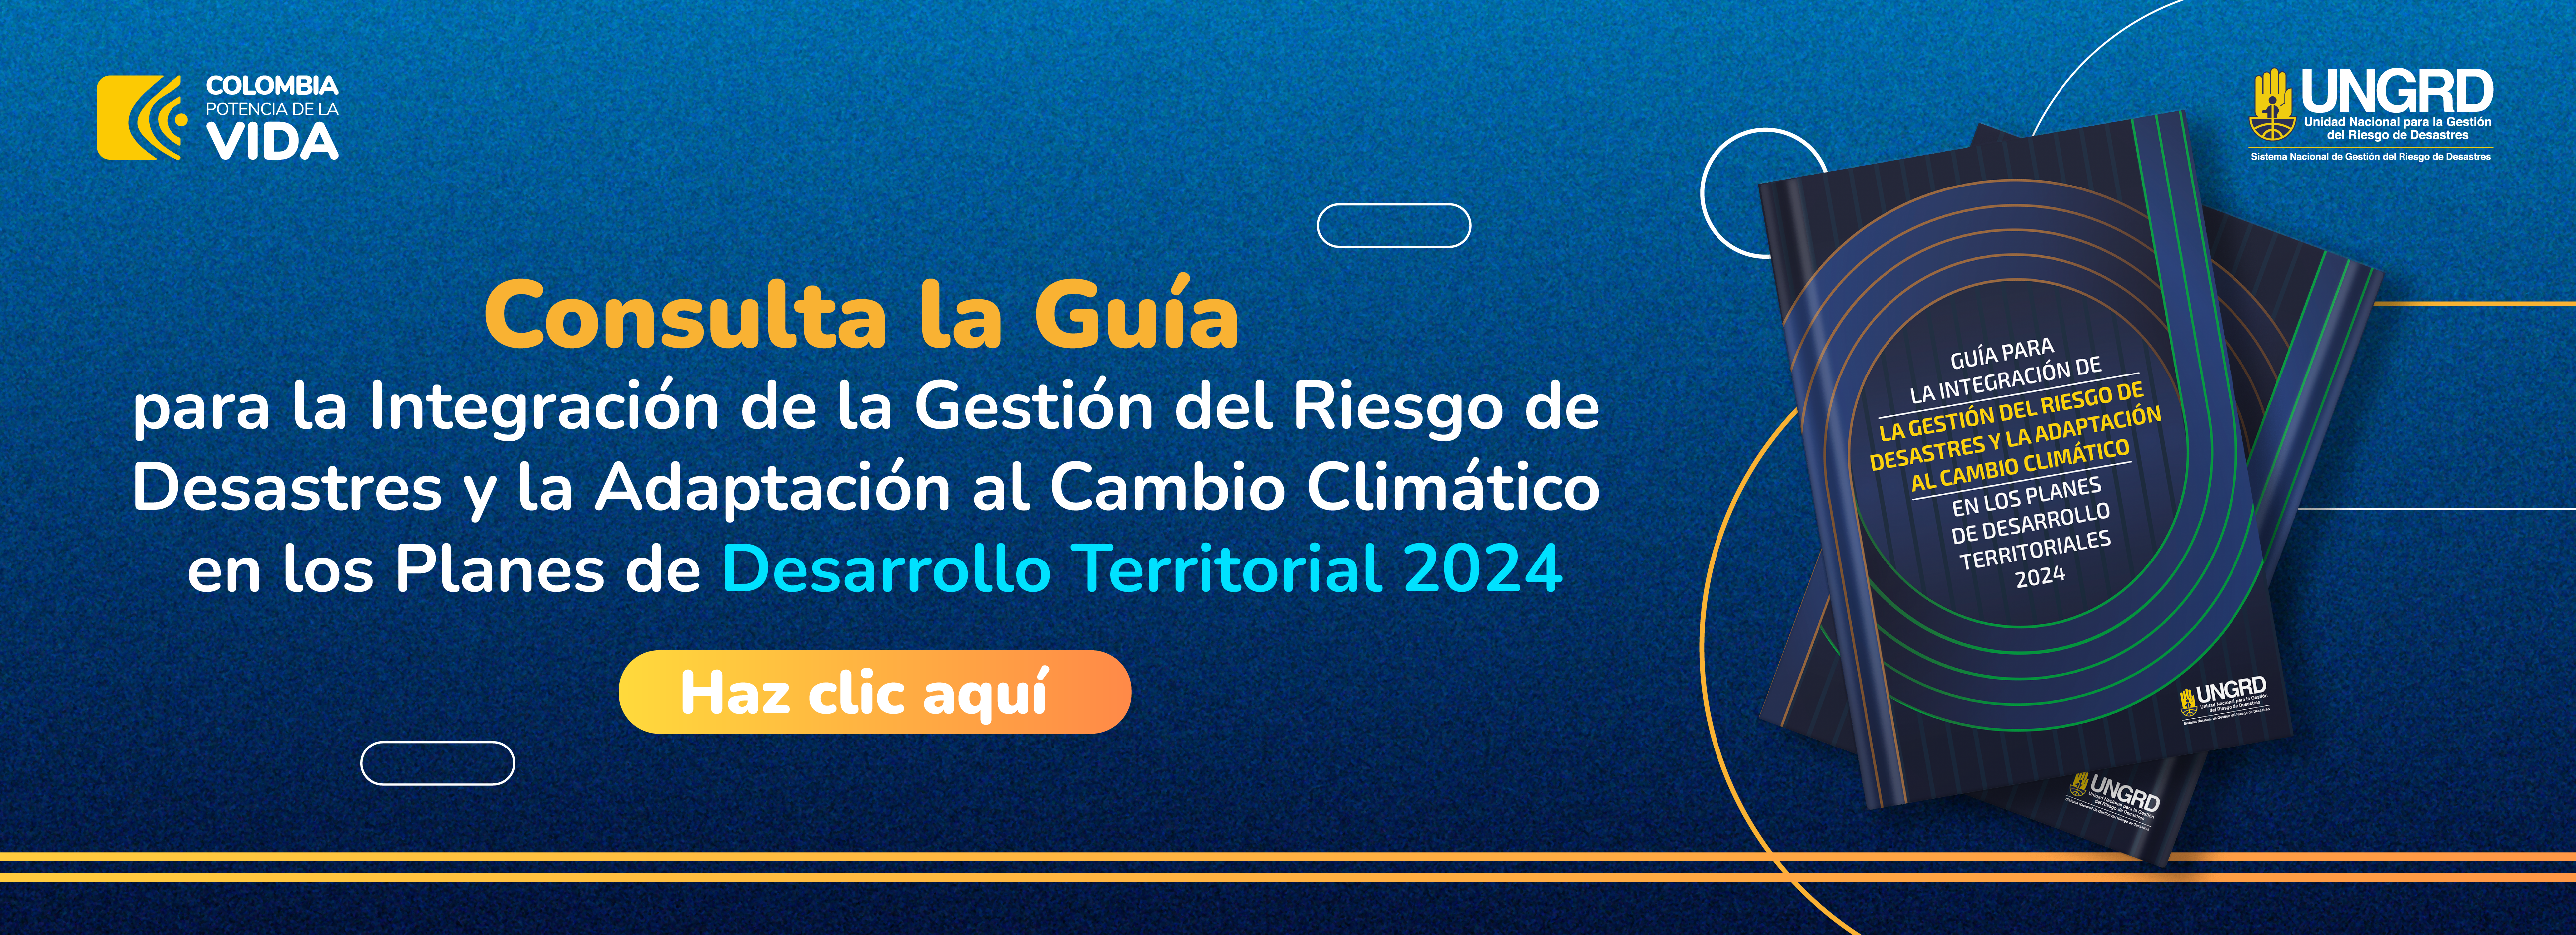 Guía Integración de la Gestión del Riesgo de Desastres y la Adaptación al Cambio Climático en los Planes de Desarrollo Territorial 2024